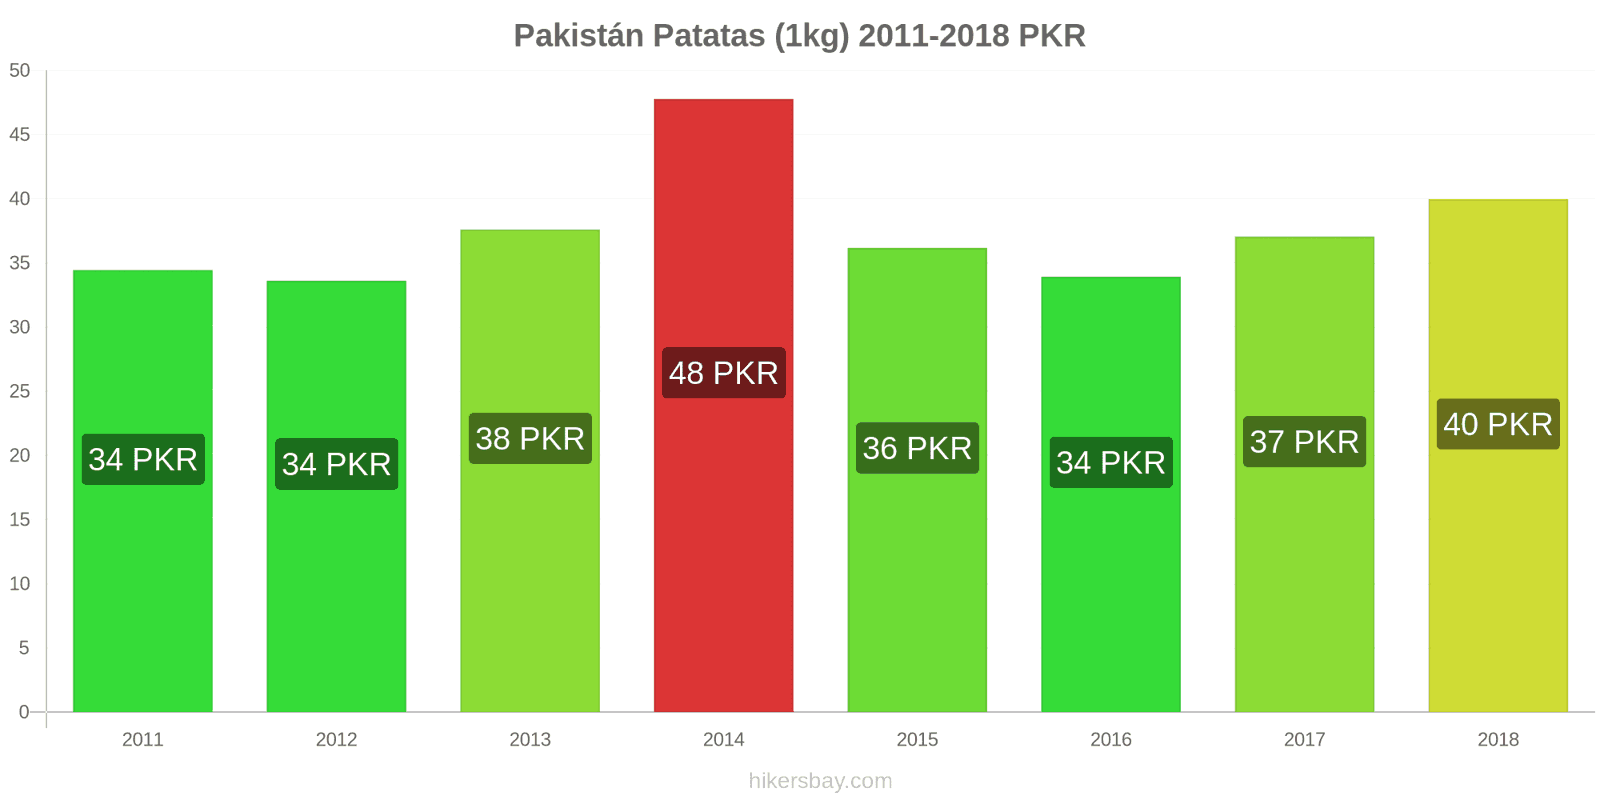 Pakistán cambios de precios Patatas (1kg) hikersbay.com